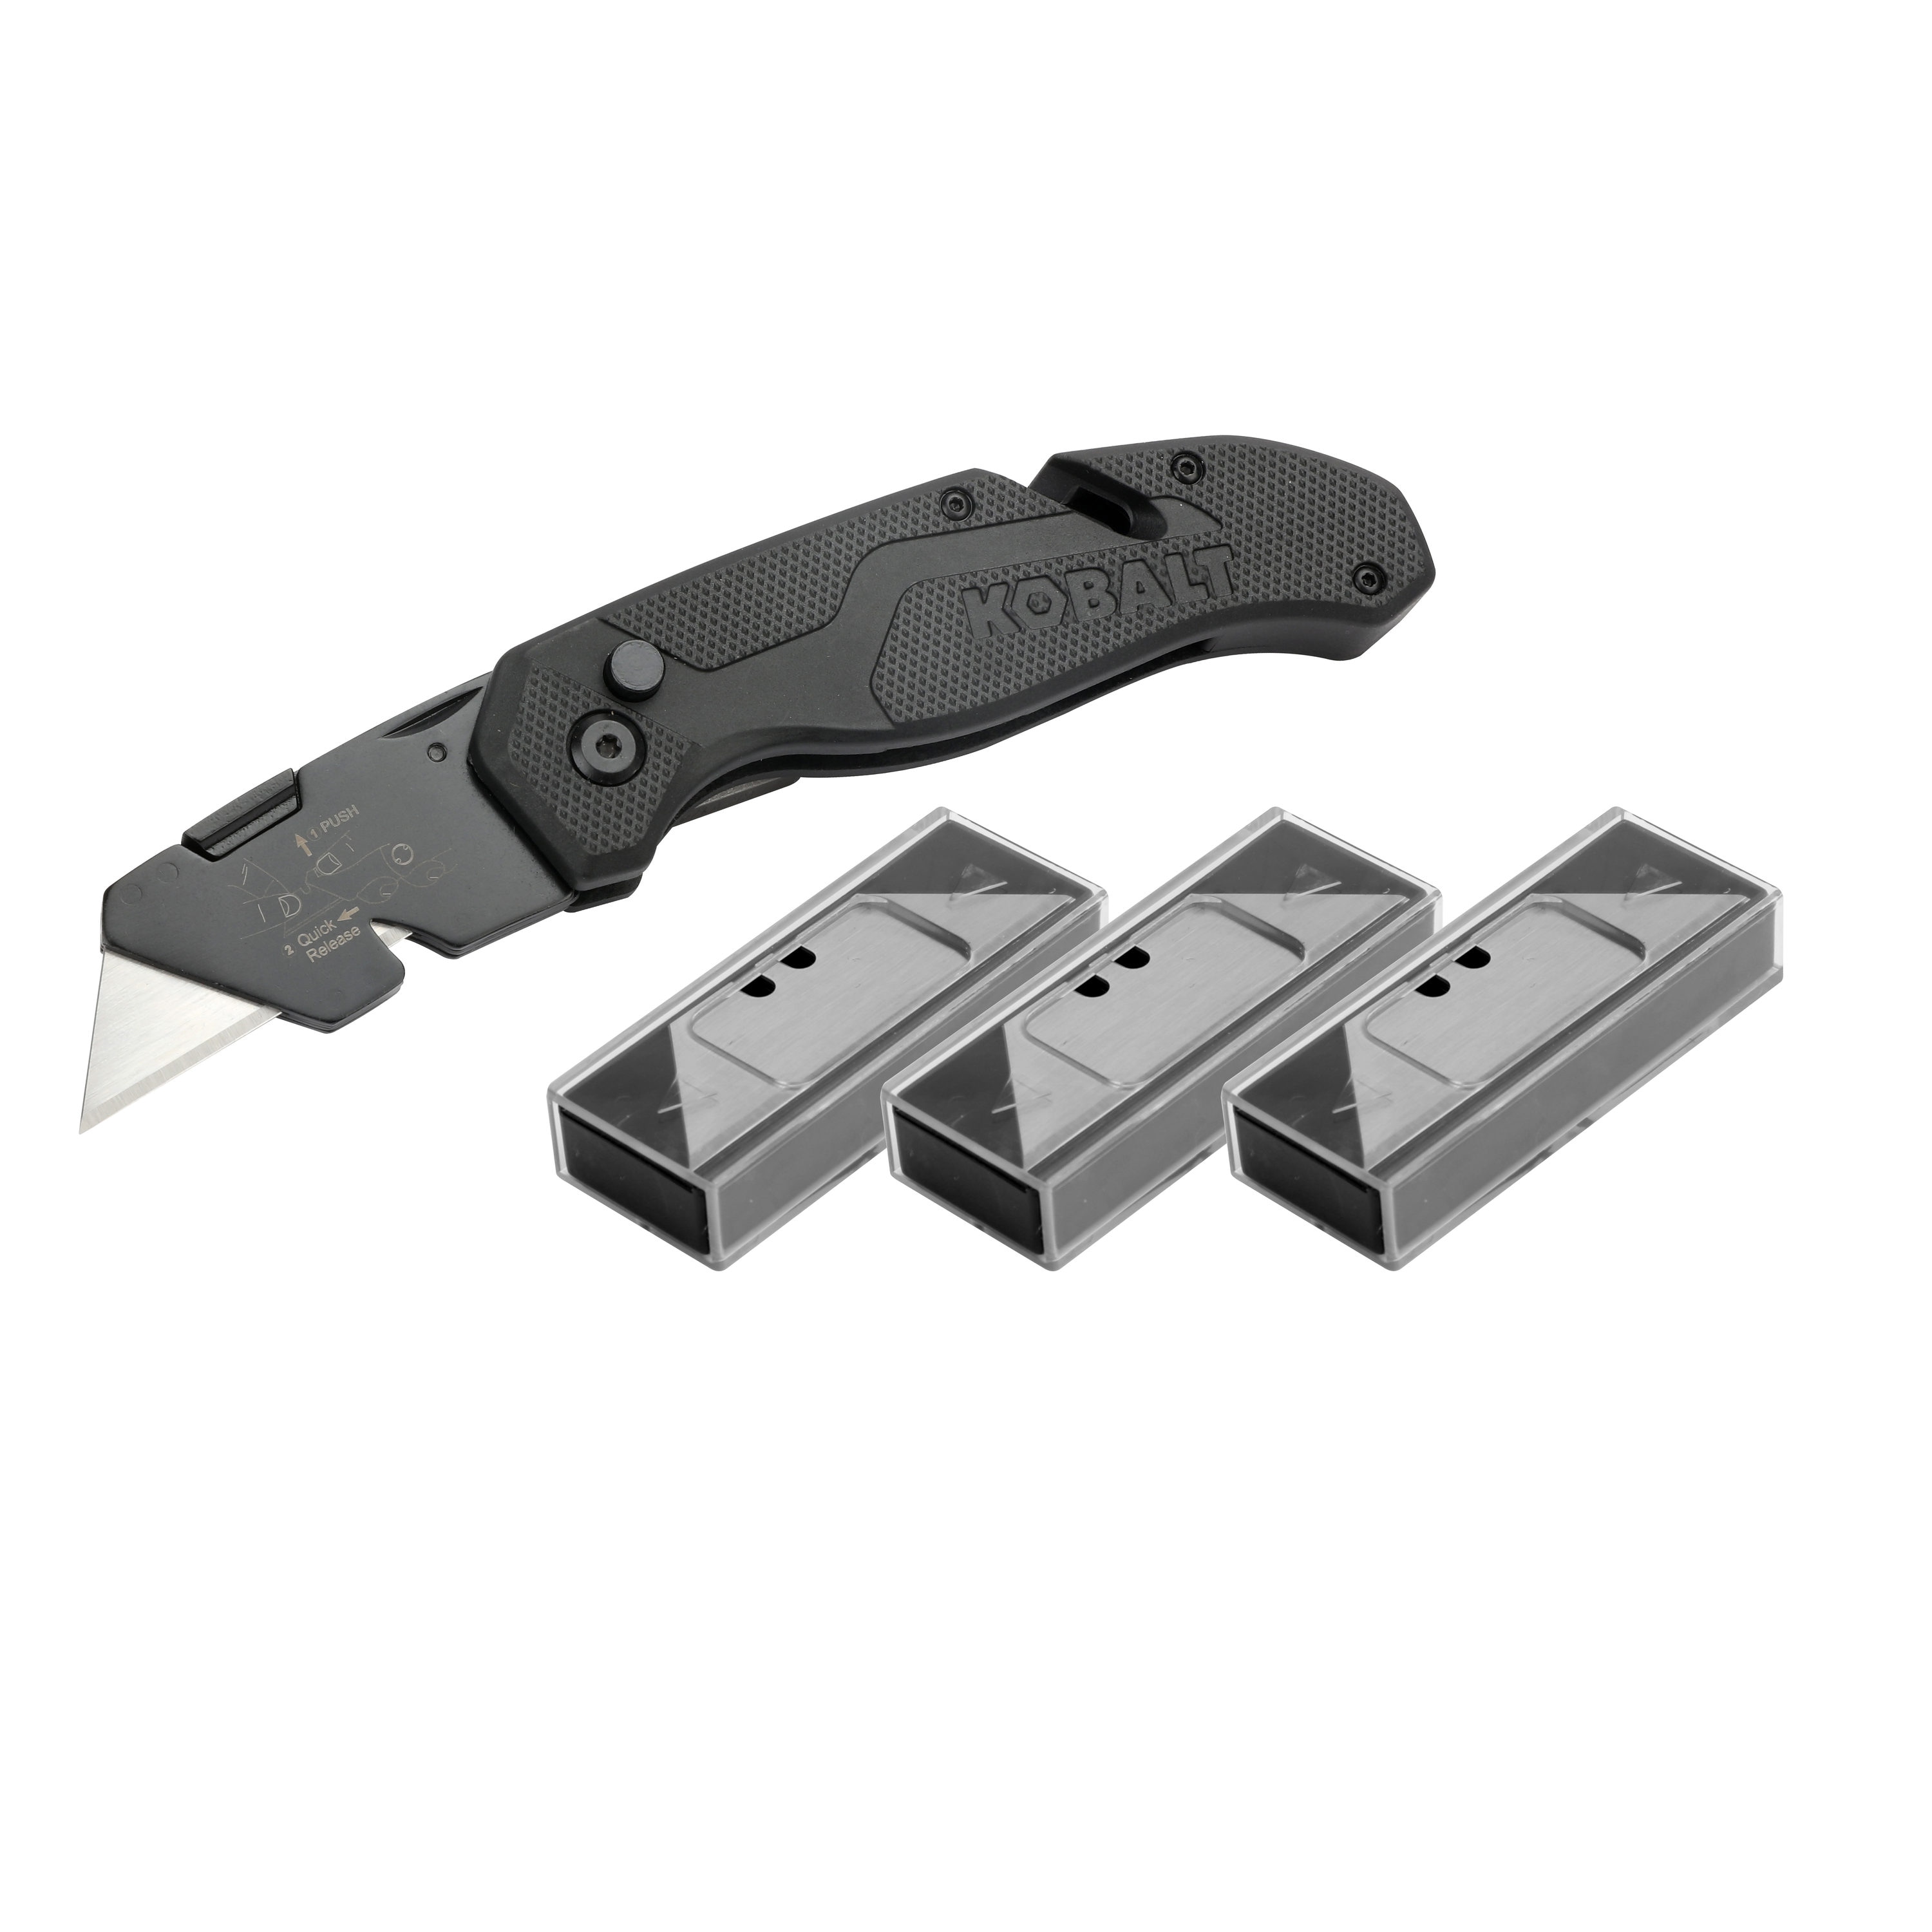 Speed Release 3/4-in 31-Blade Folding Utility Knife | - Kobalt 59710